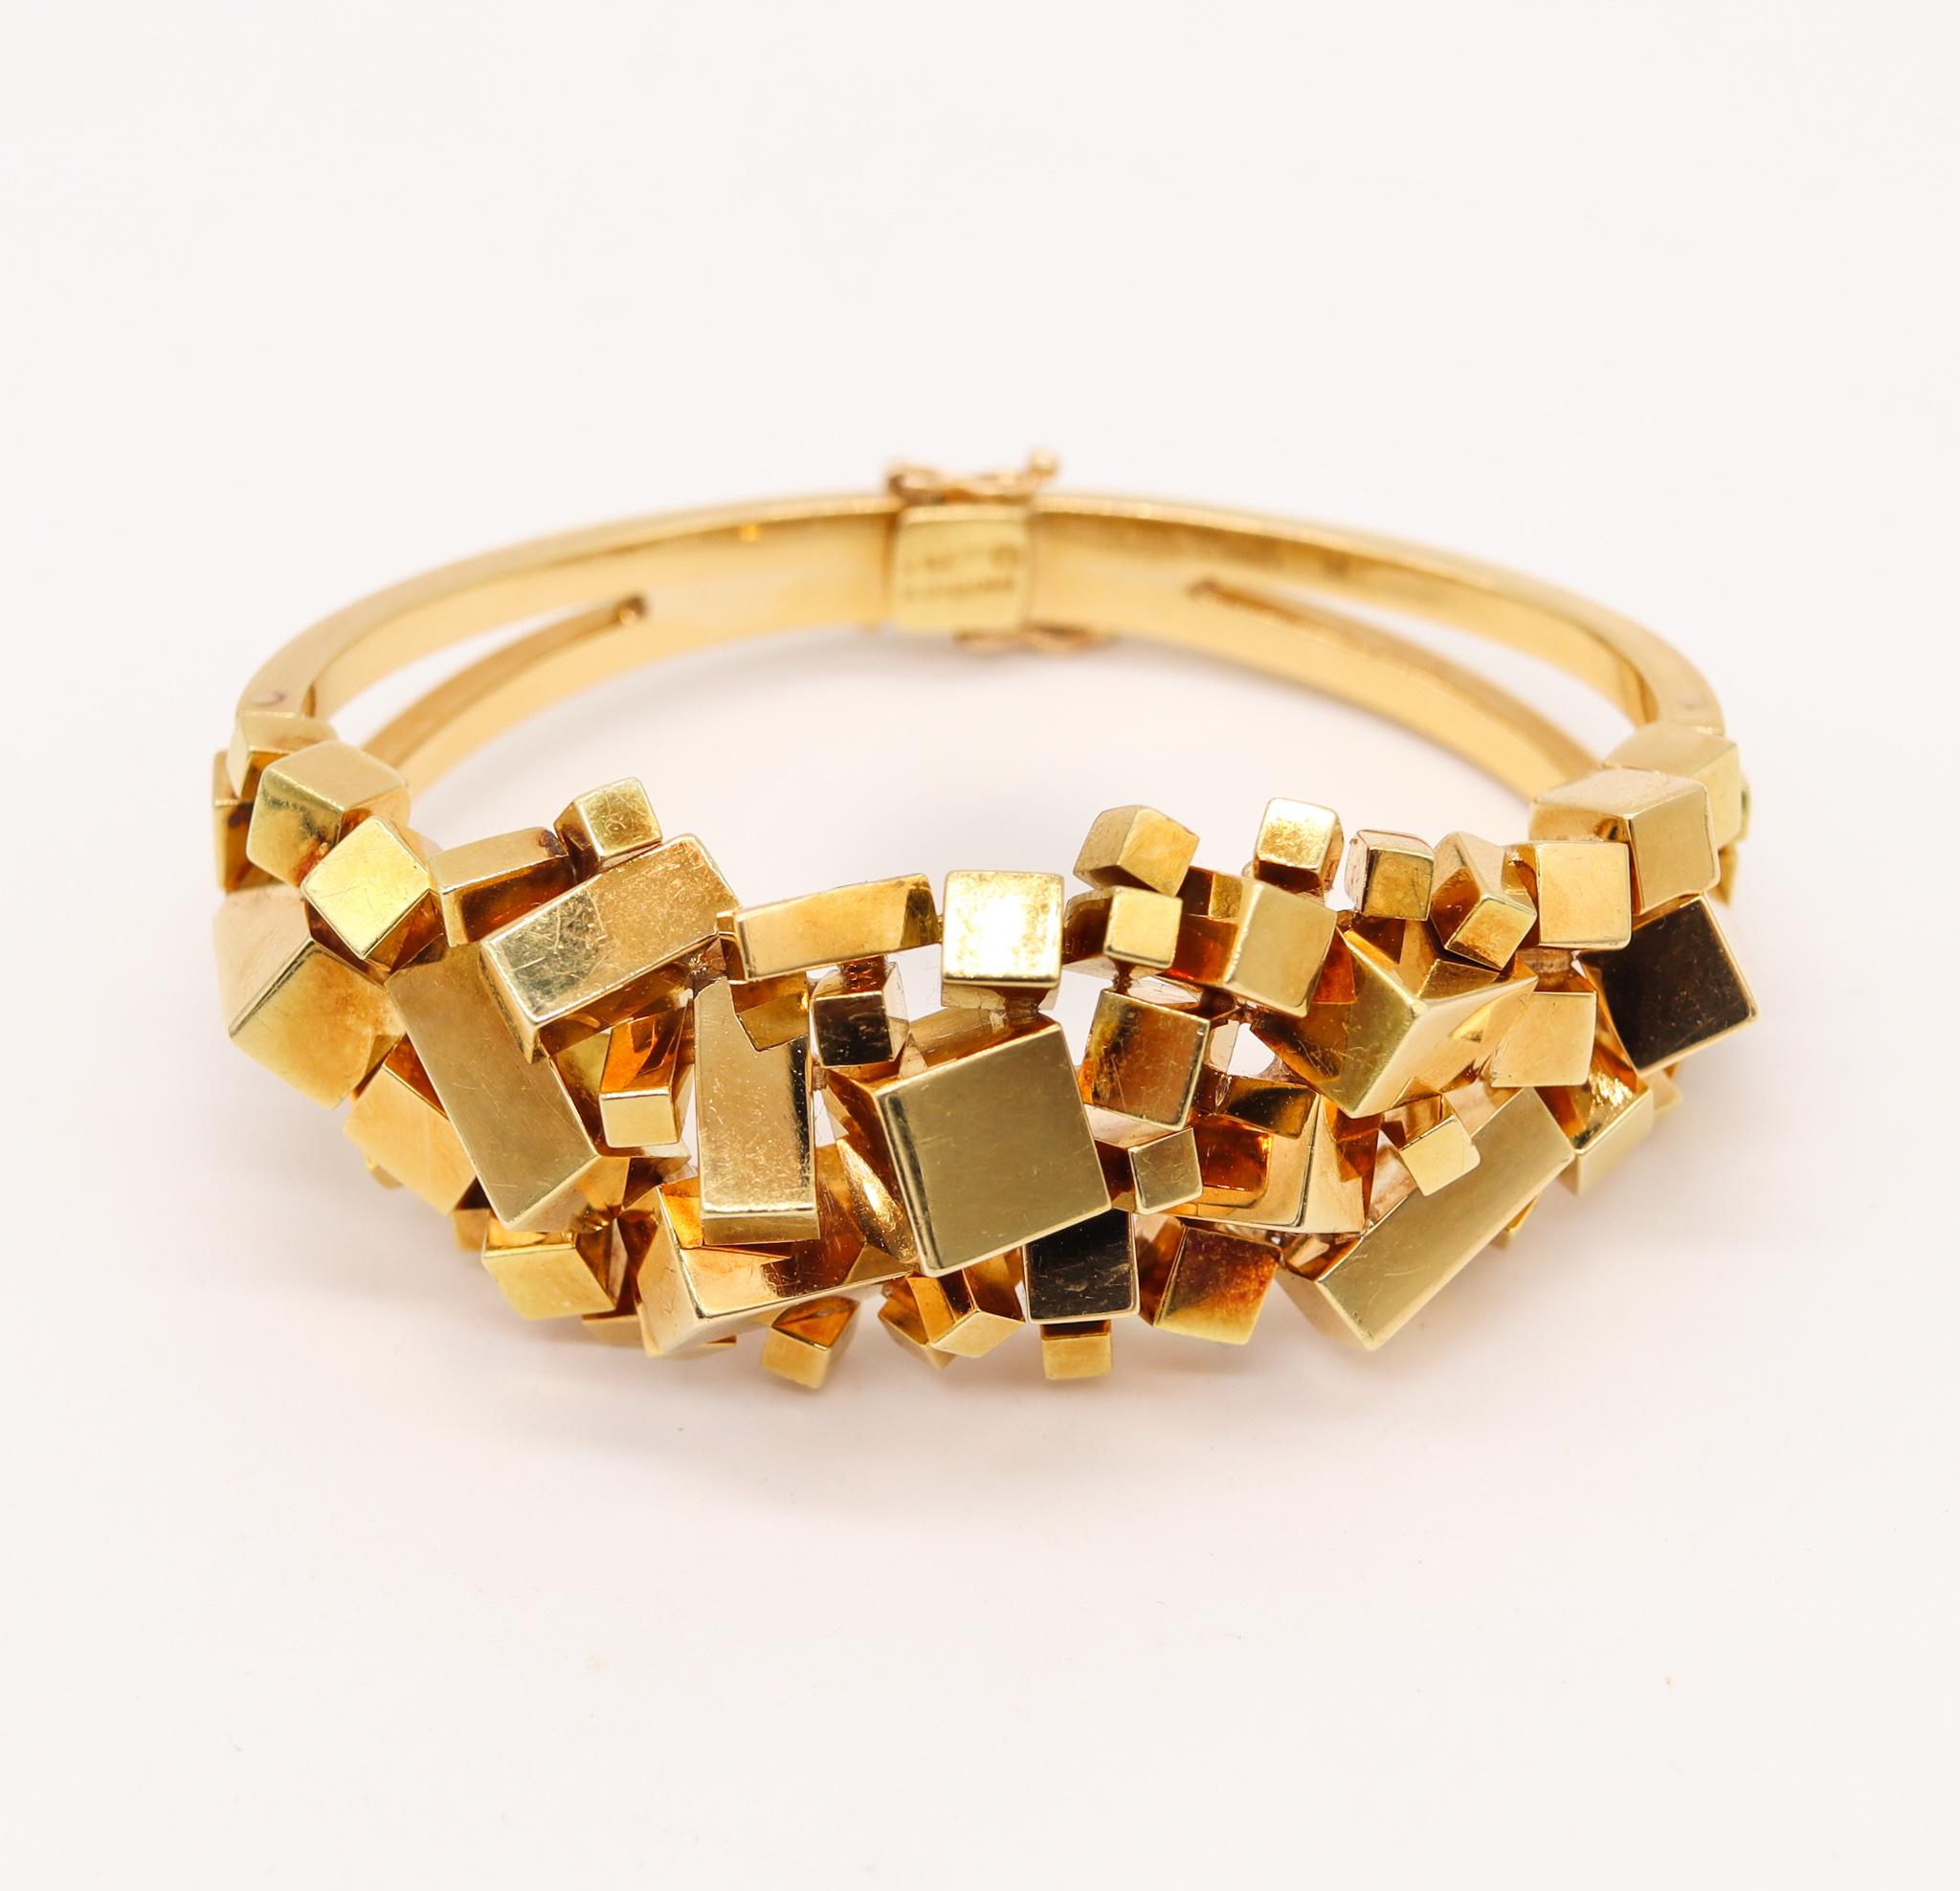 Alfred Karram 1970 New York Brutalism Geometric Cubic Bracelet In 18Kt Gold 1